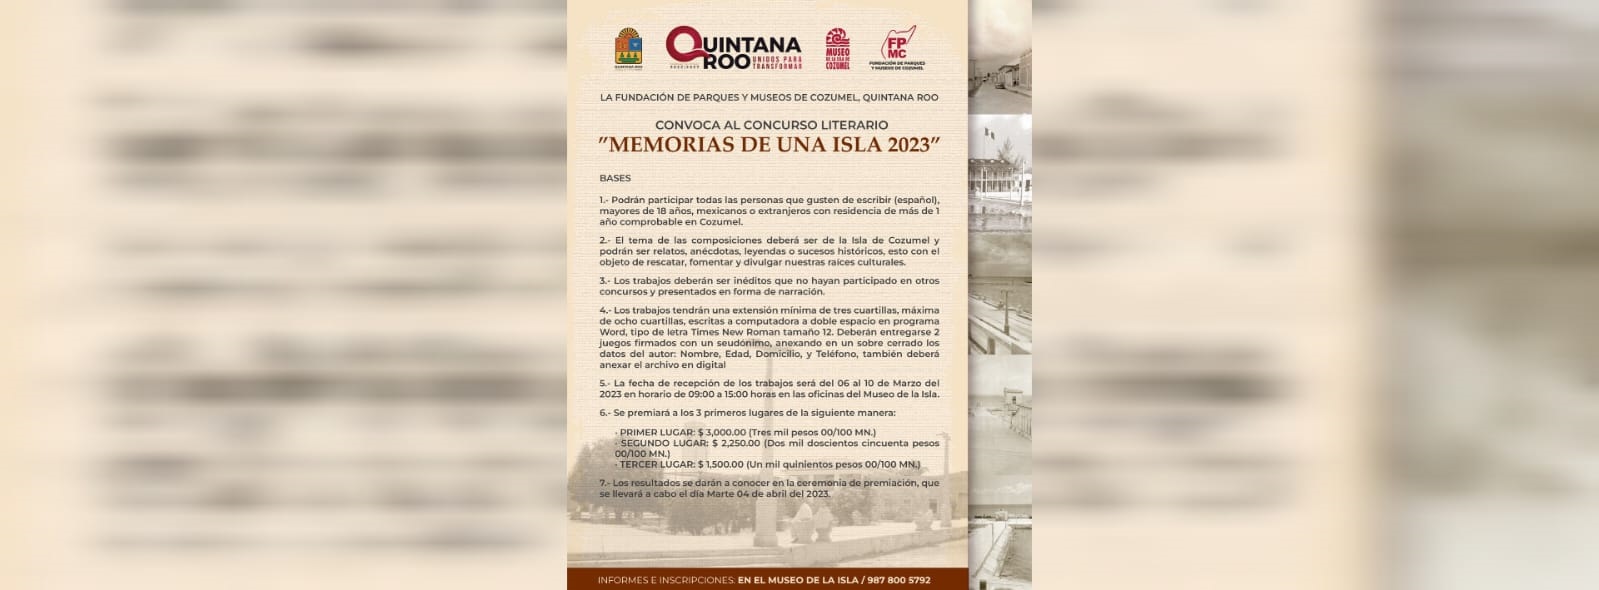 La FPMC convoca al concurso literario “Memorias de una Isla”